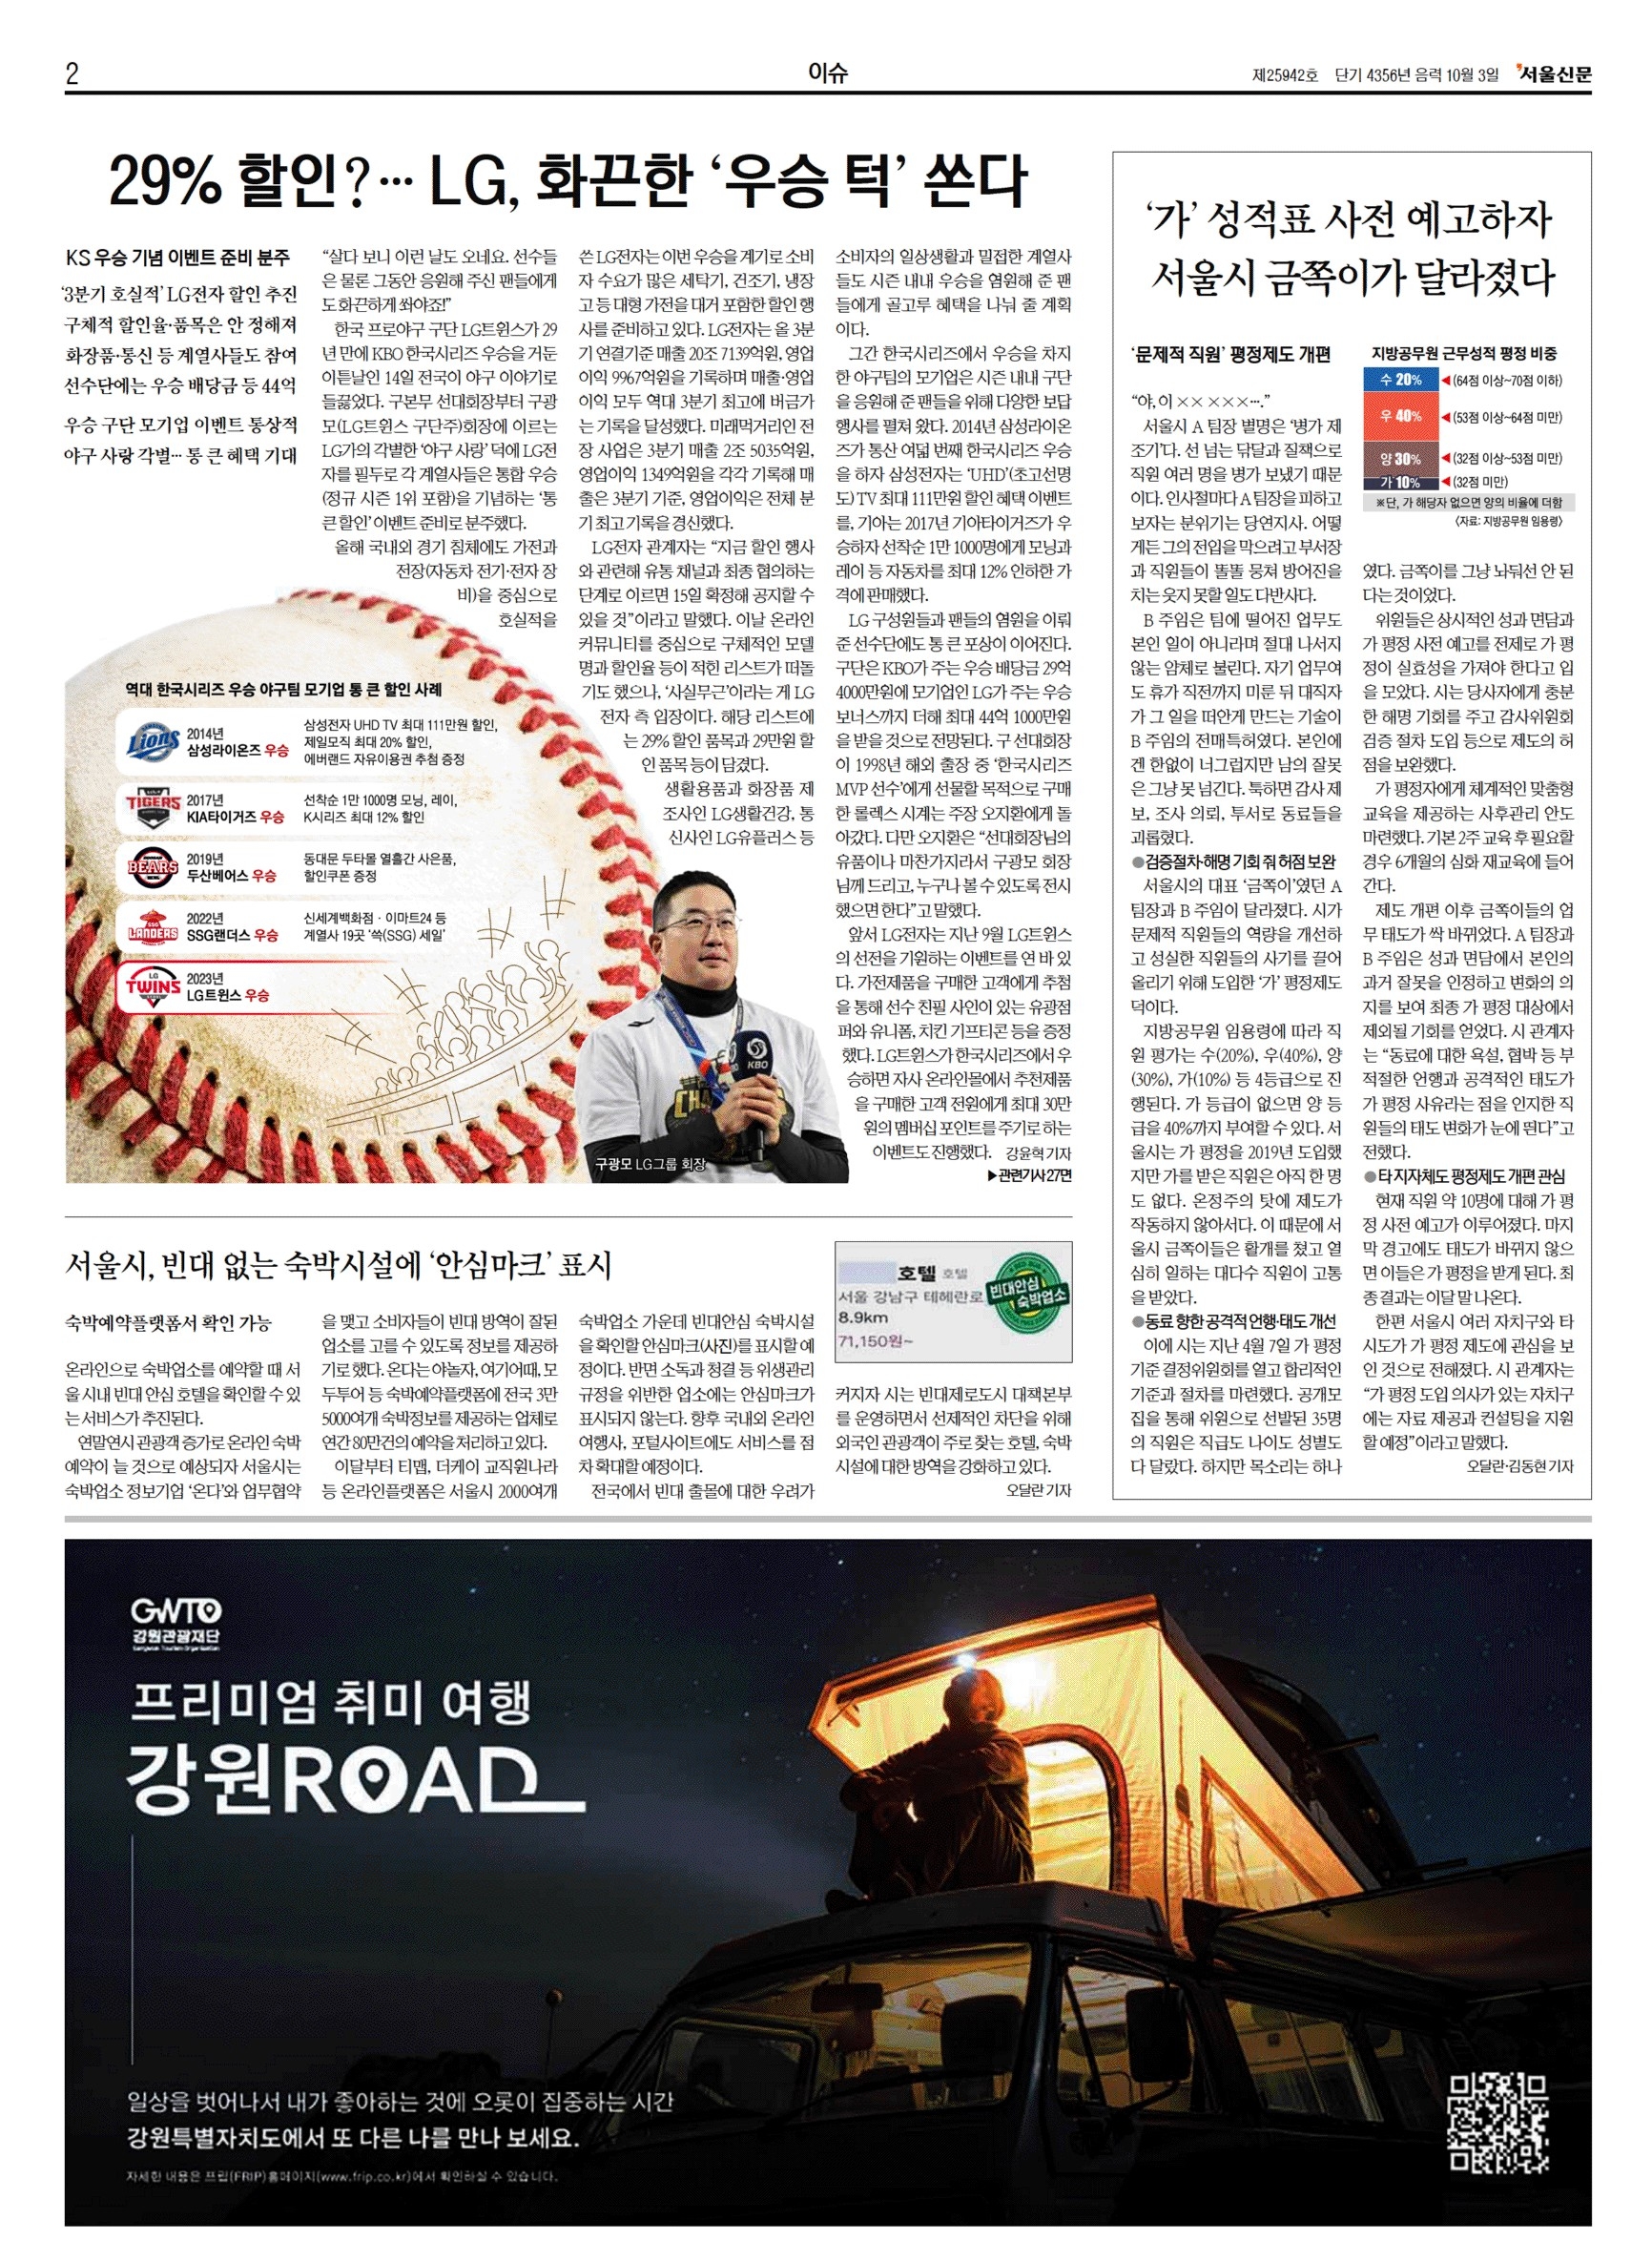 서울신문은 15일 신문 2면에도 LG의 우승 관련 기사를 크게 다뤘다.